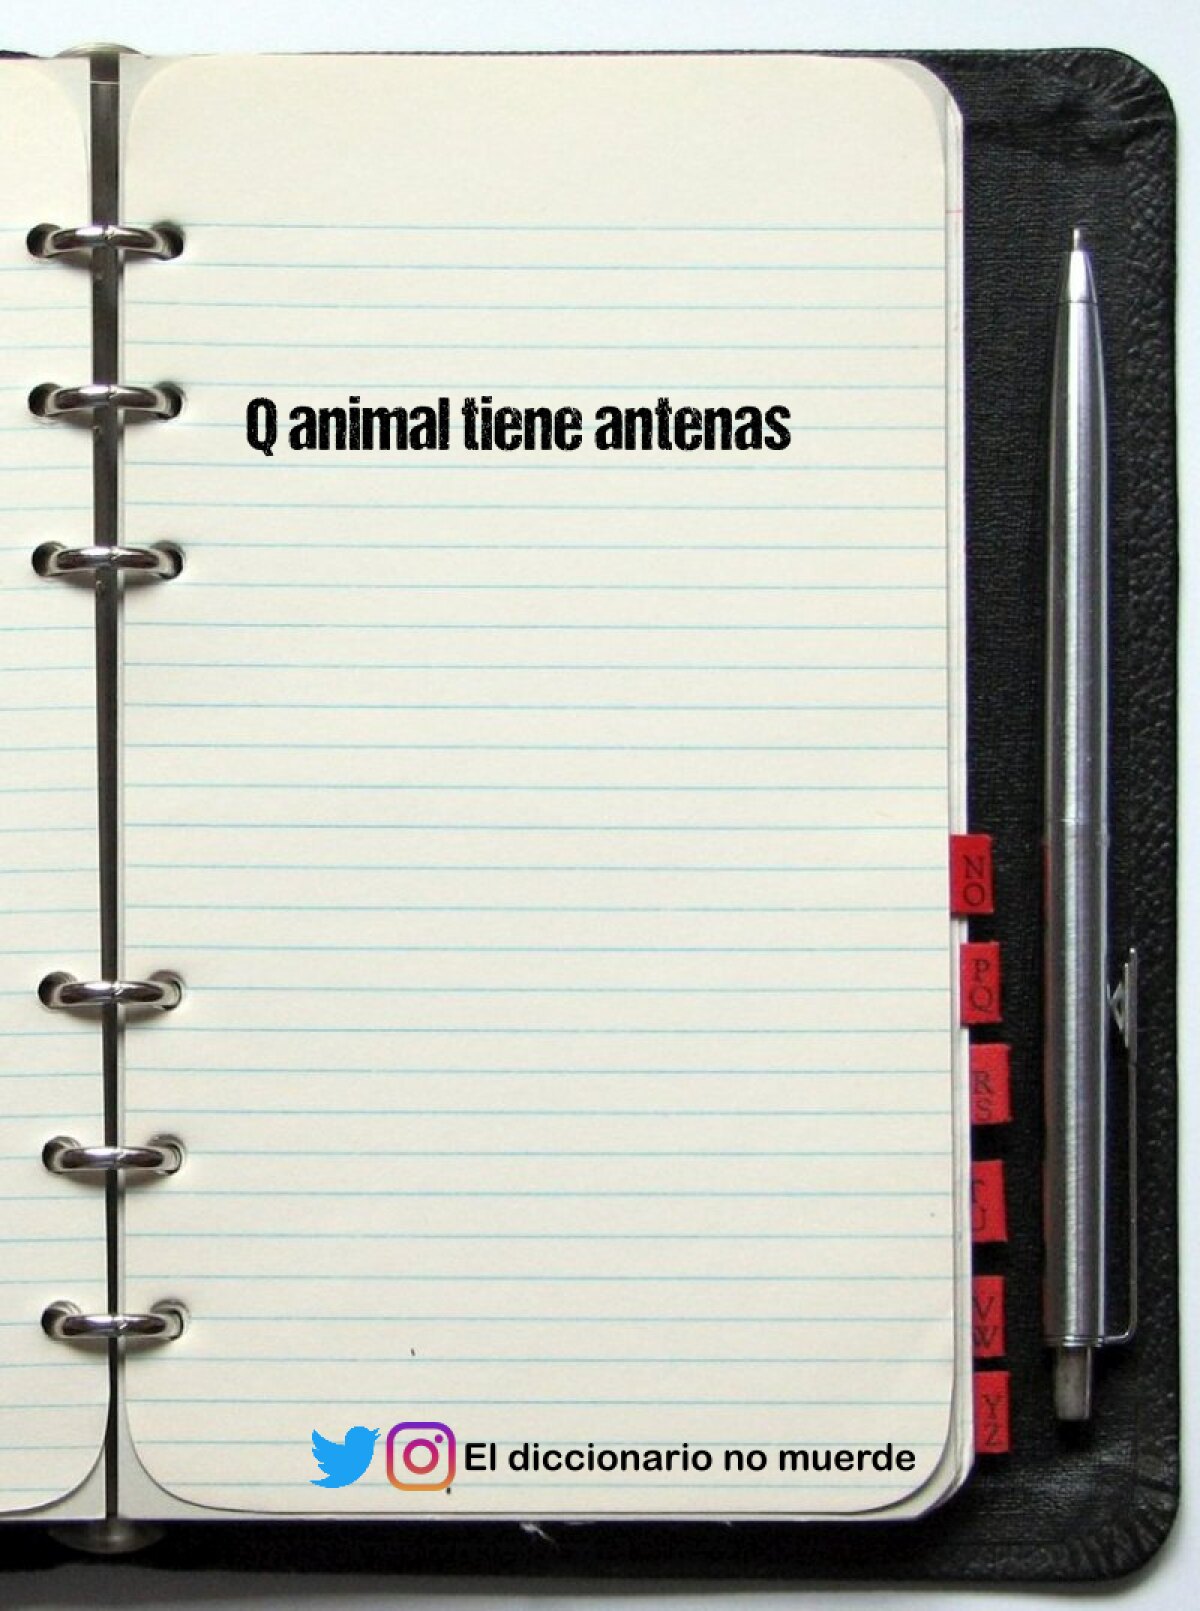 Q animal tiene antenas